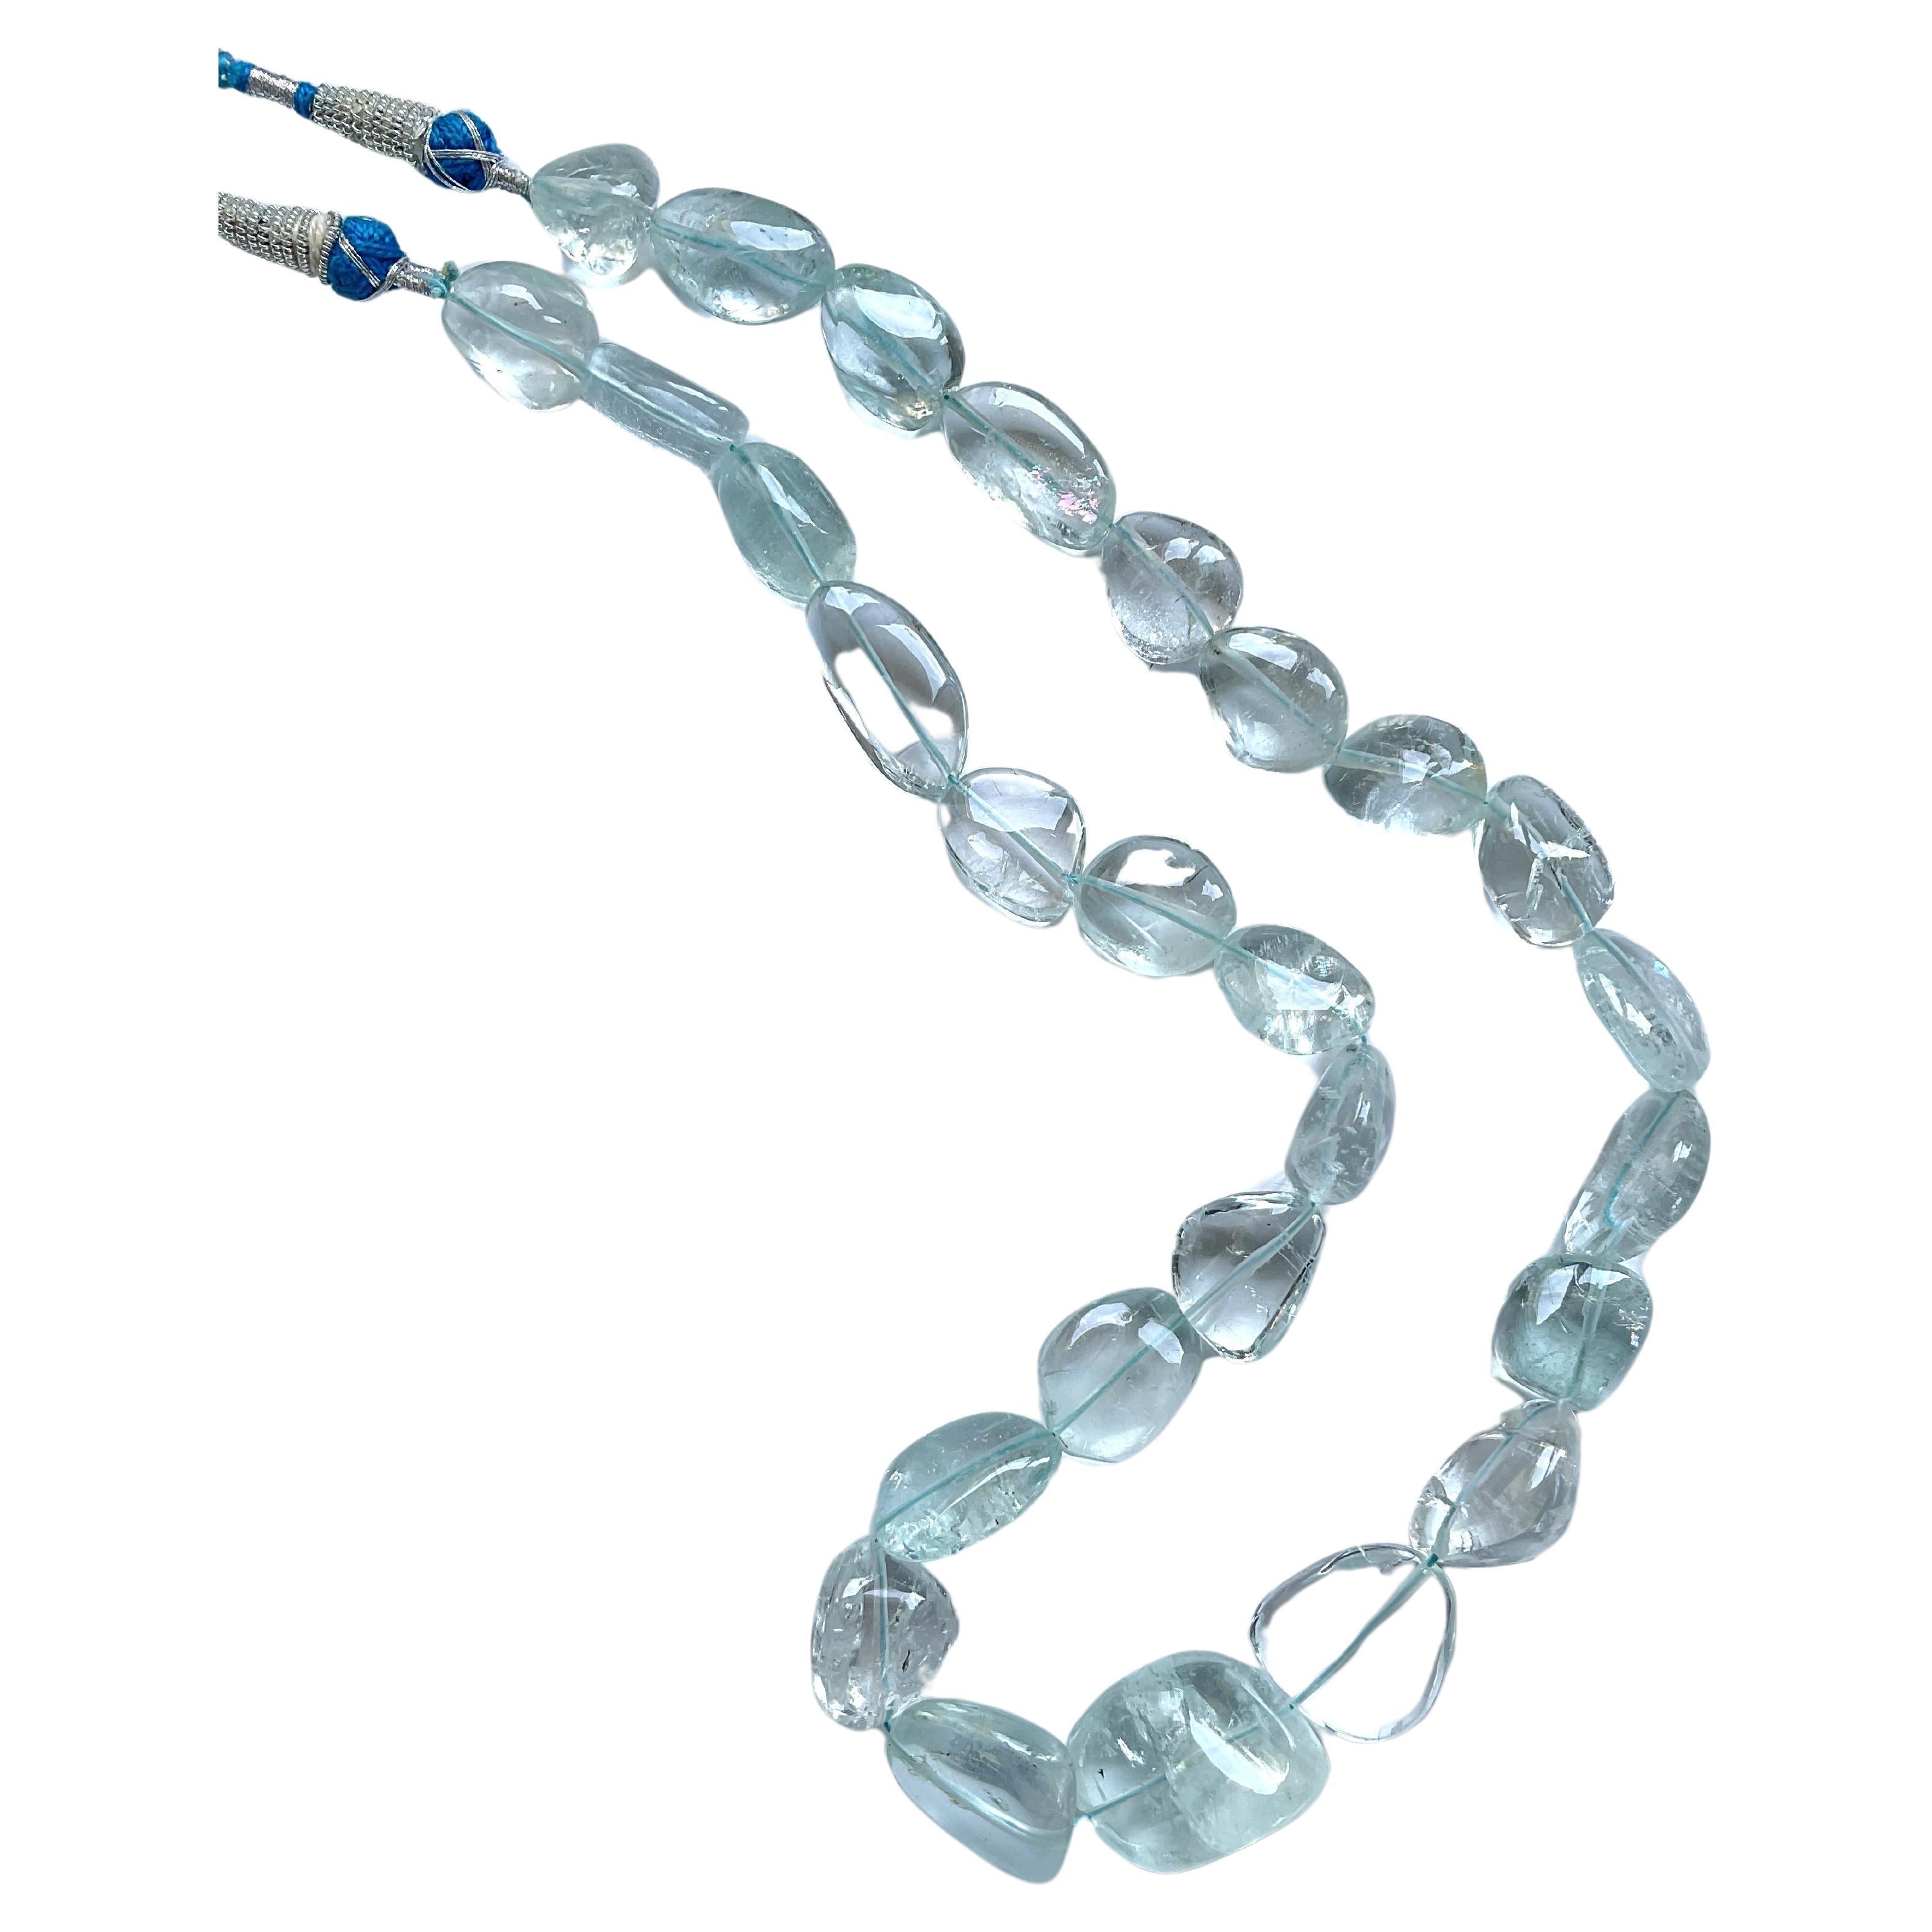 539.50 Karat Aquamarin Halskette Getrommelt Ebene Top-Qualität natürlichen Edelstein

Edelstein - Aquamarin 
Gewicht - 539,50 Karat
Größe - 15x18 bis 19x25 mm
Menge - 1 Strang